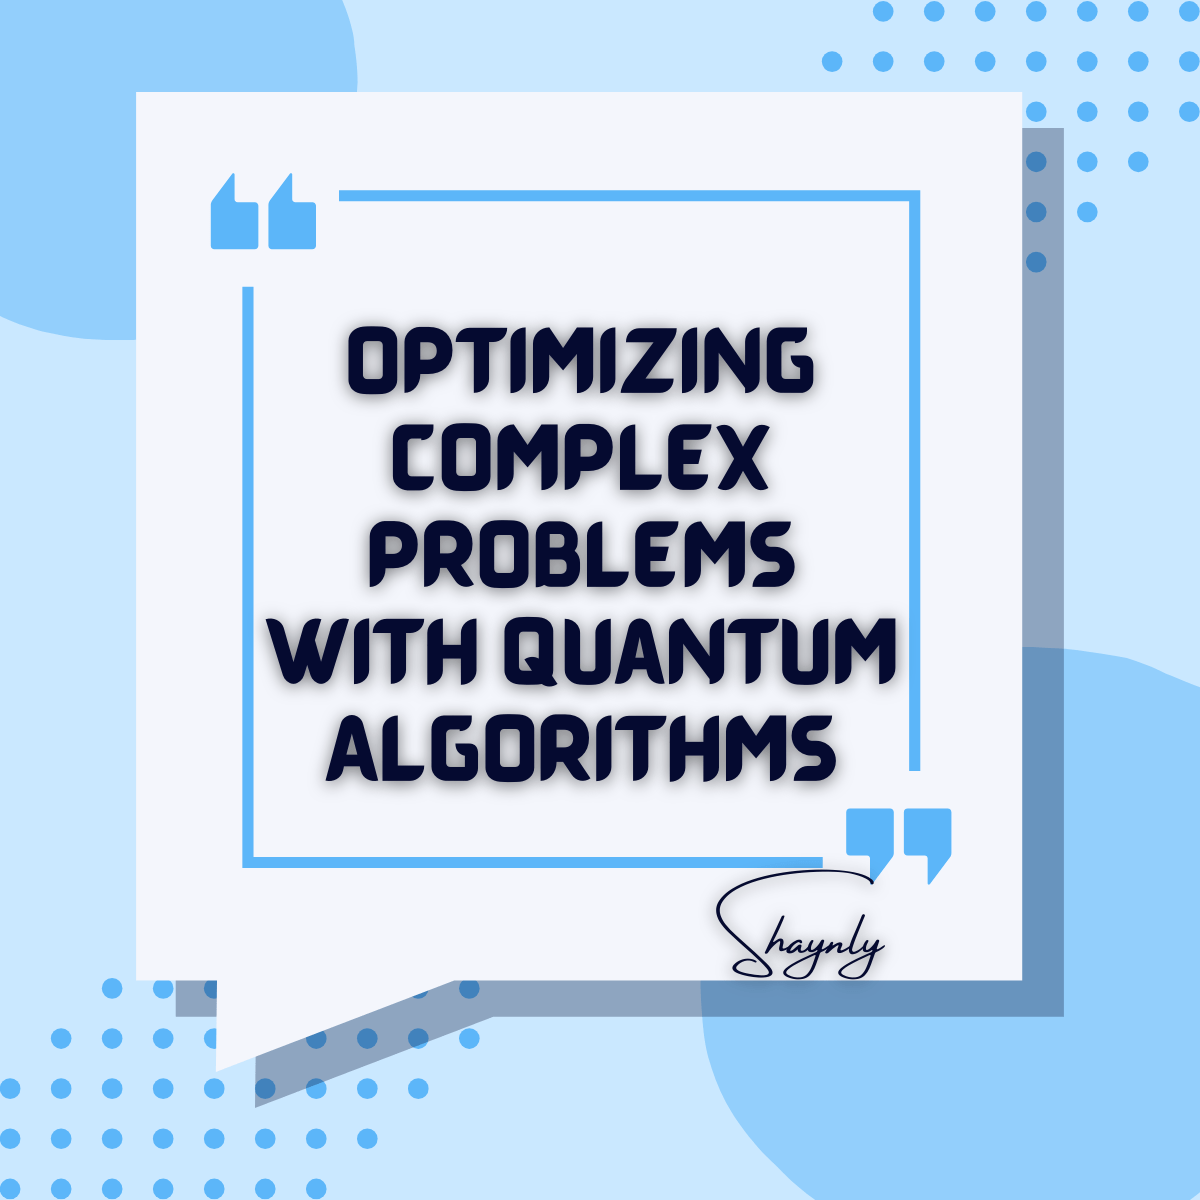 Quantum Computing Algorithms for Optimization